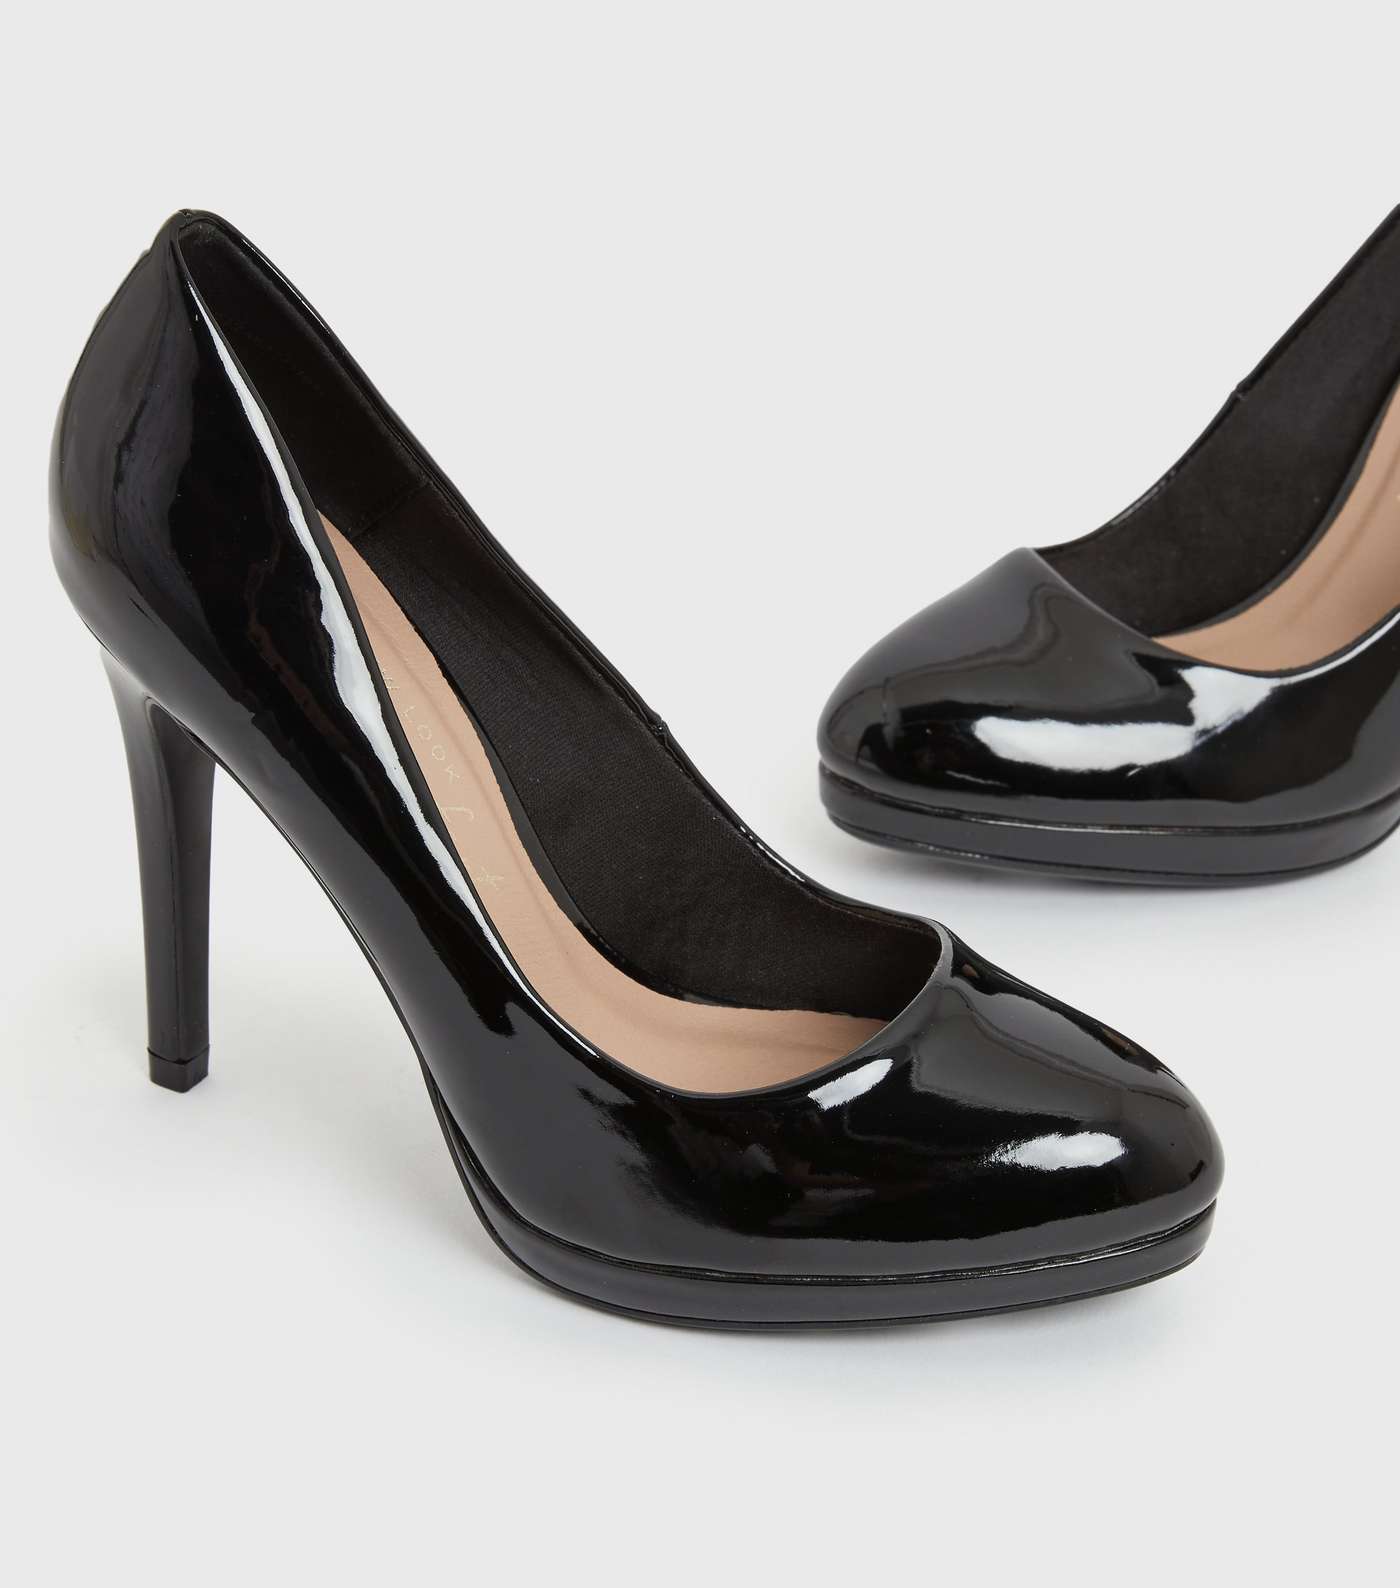 Black Patent Round Platform Stiletto Heel Court Shoes Image 3